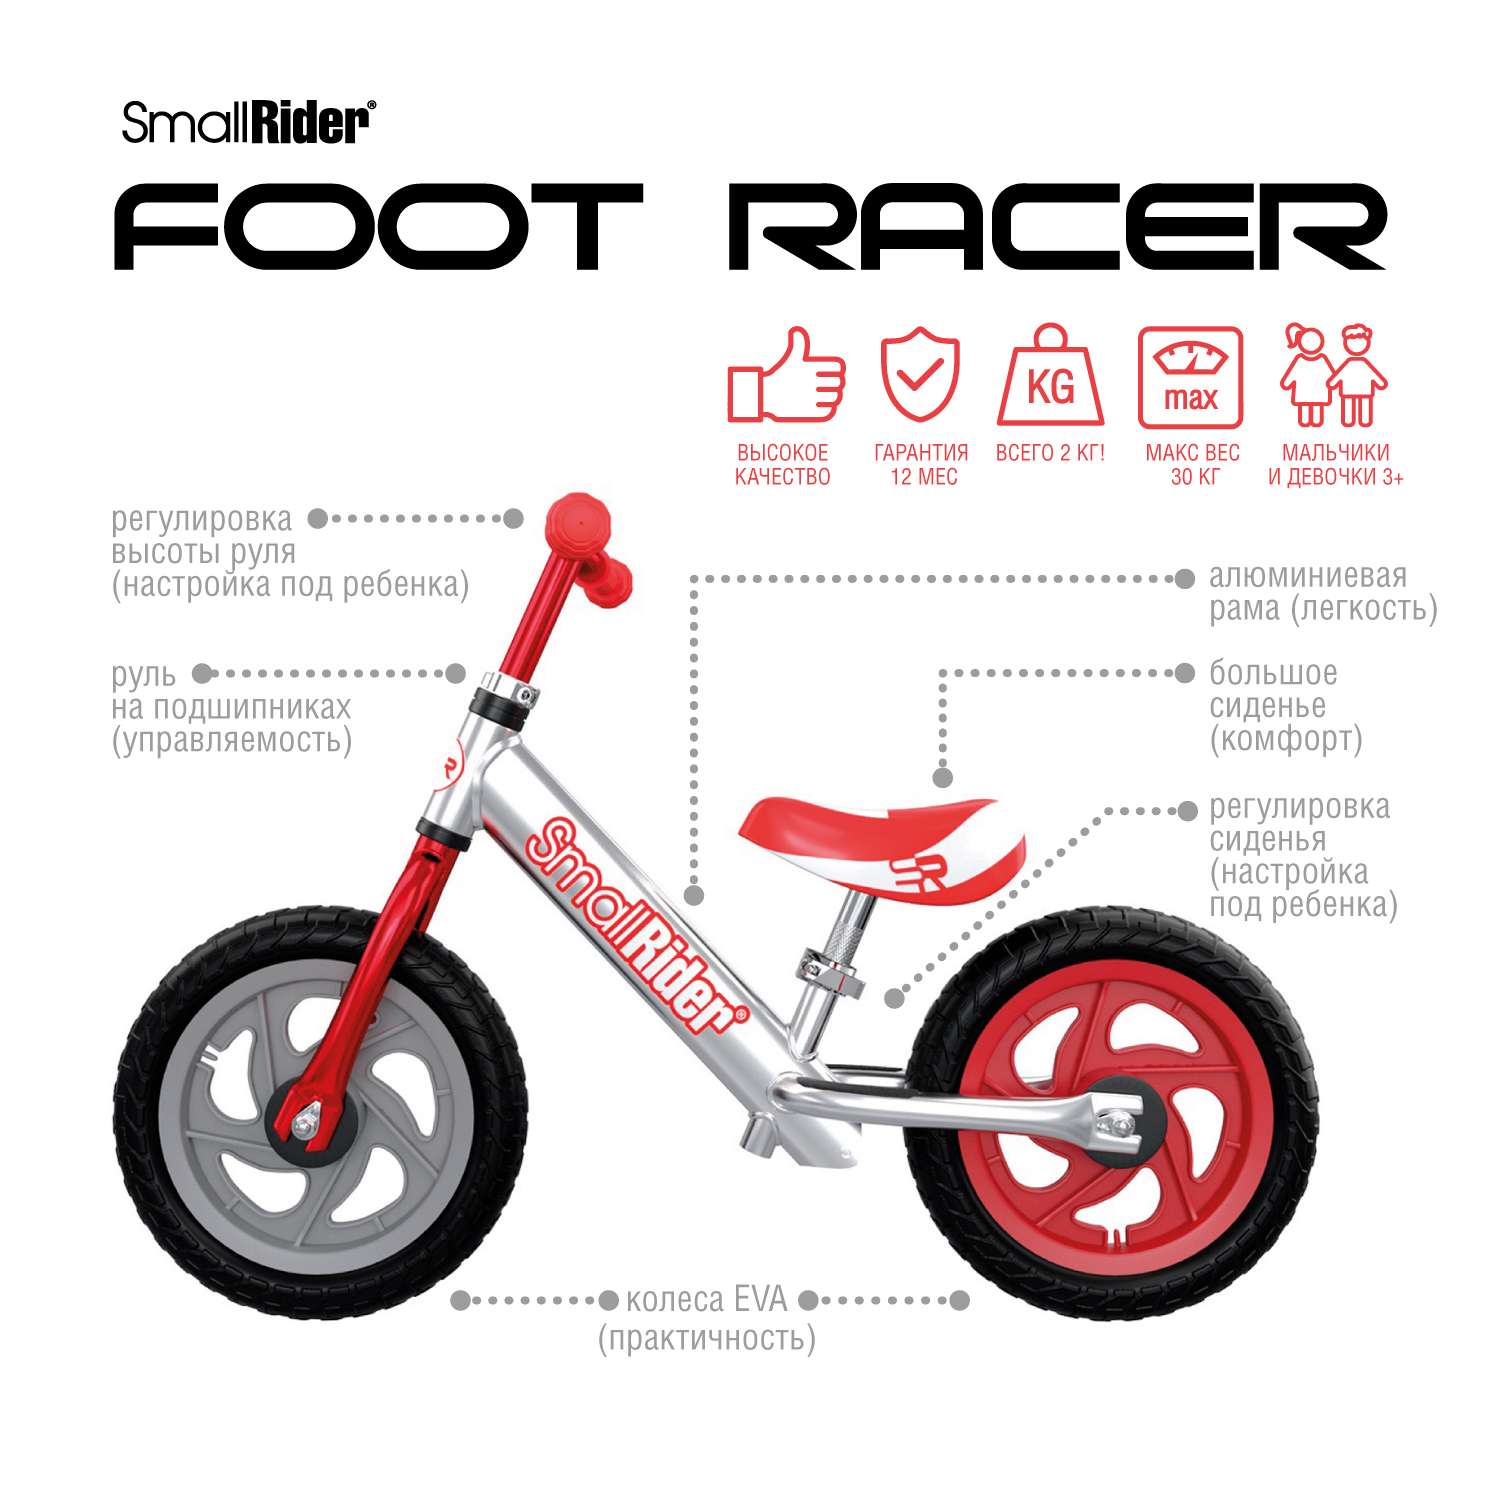 Беговел Small Rider Foot Racer 3 Eva серебро-красный - фото 2